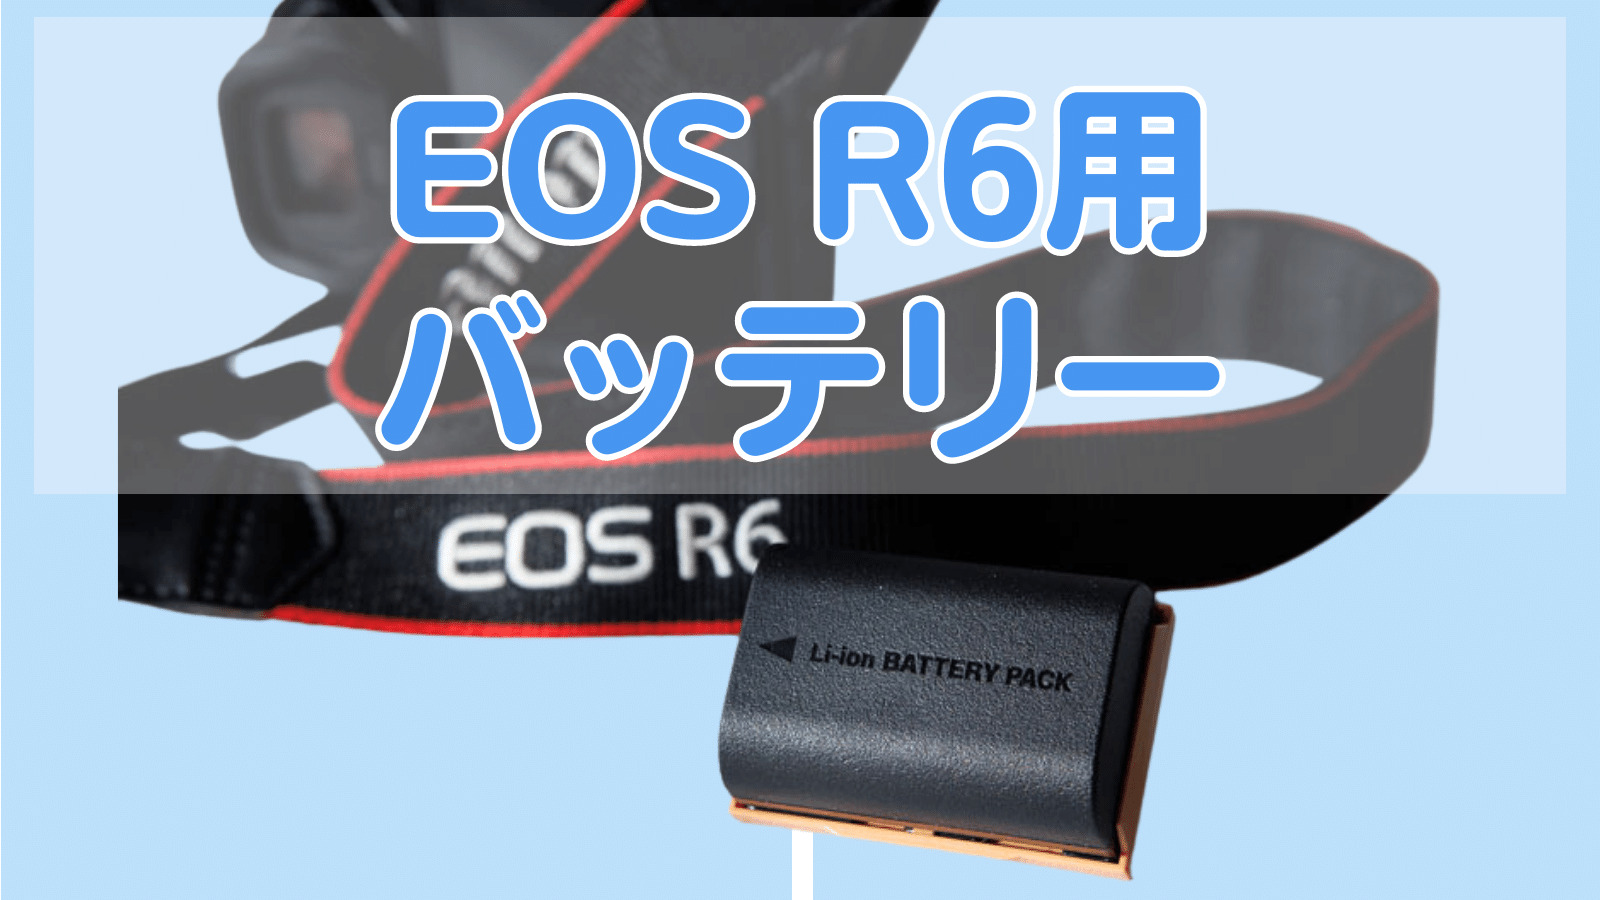 【美品】Canon EOS R6 互換バッテリー&ストラップ付き